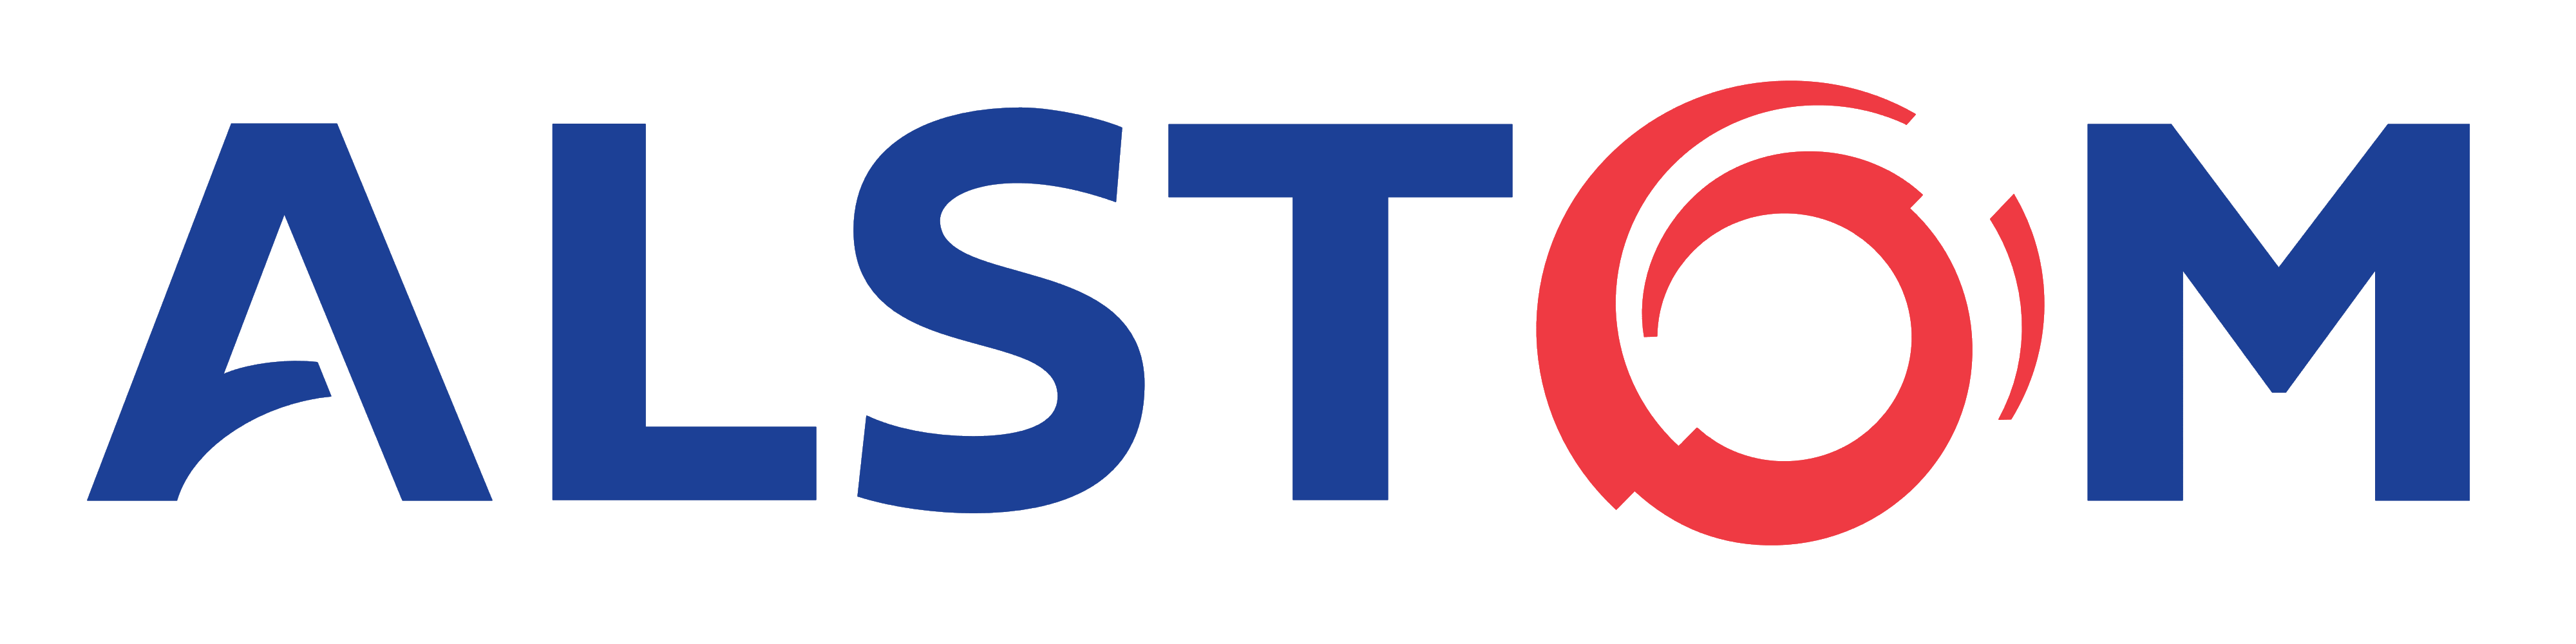 Red and blue Alstom logo